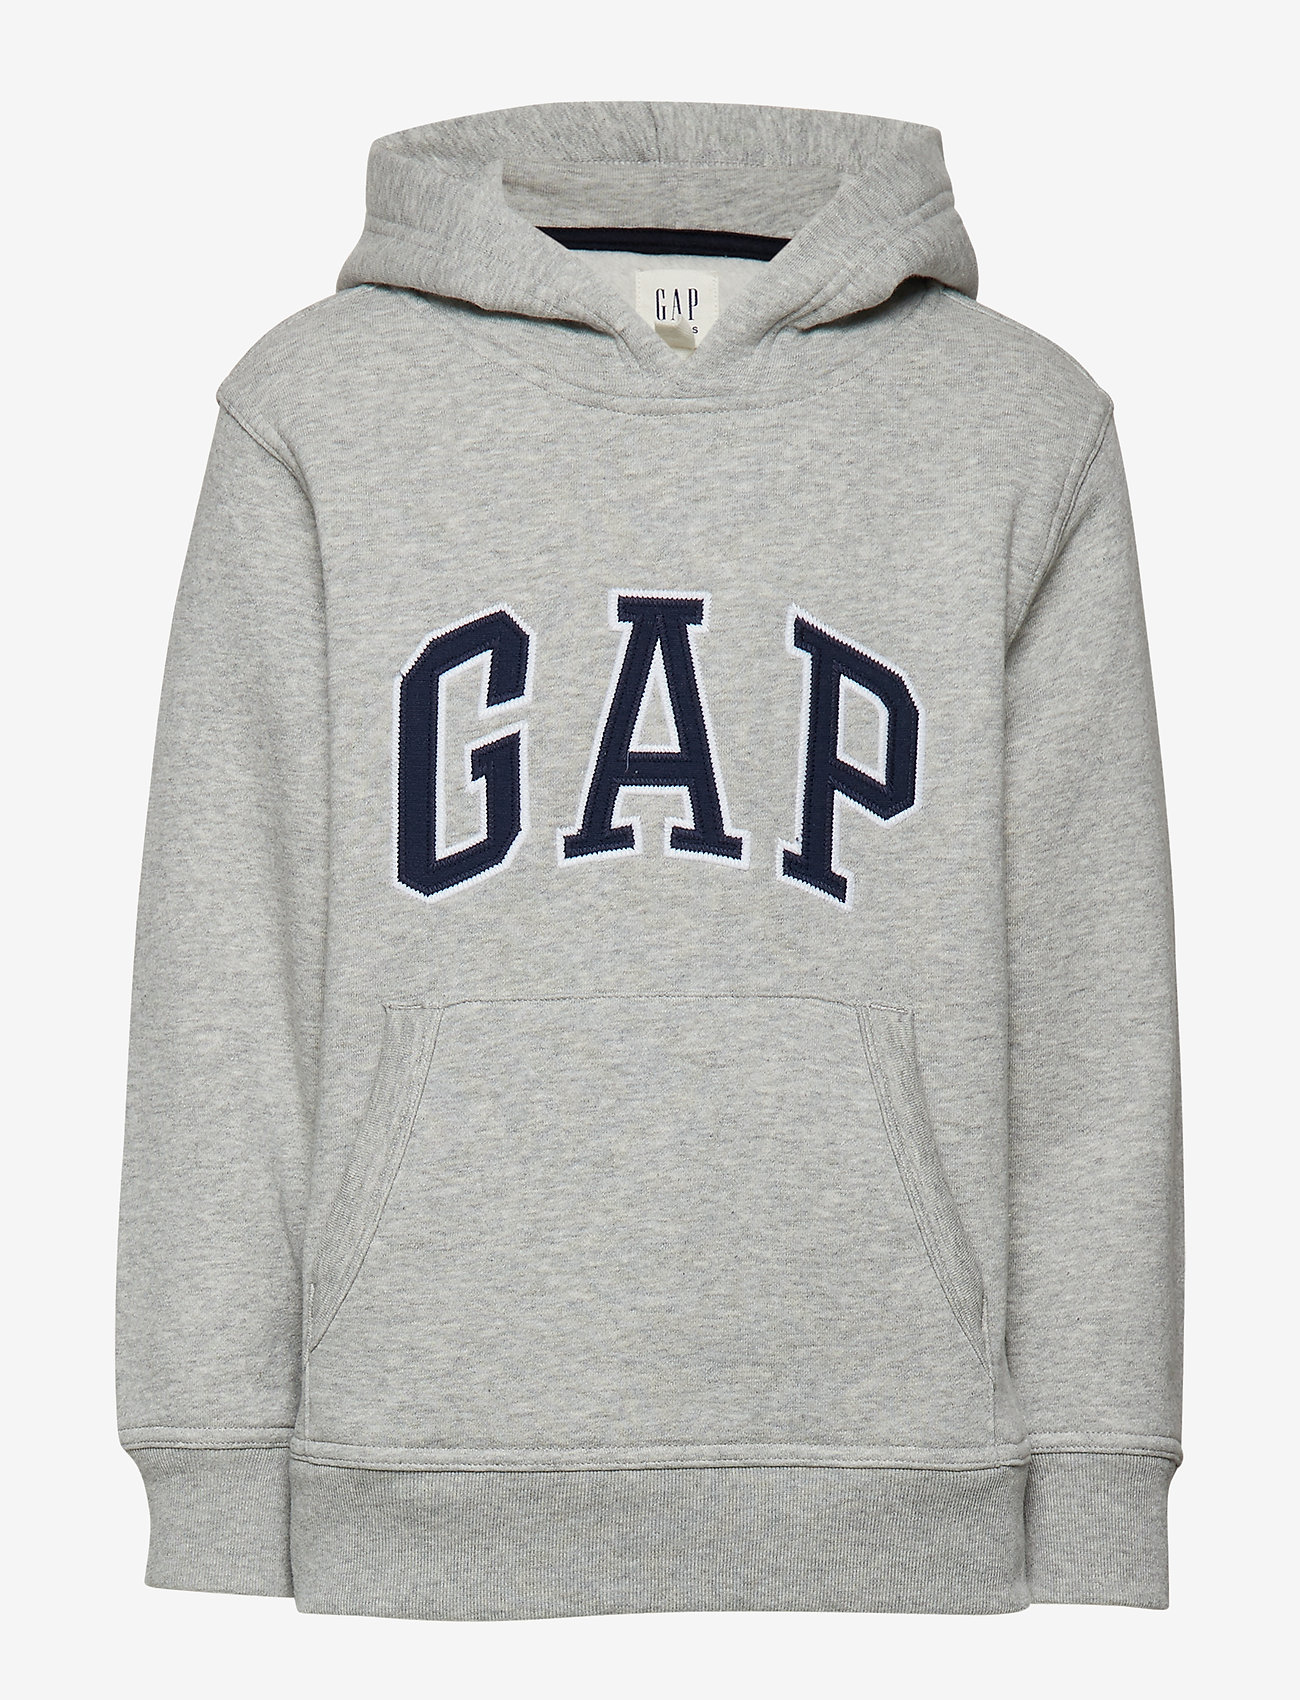 gap logo jacket